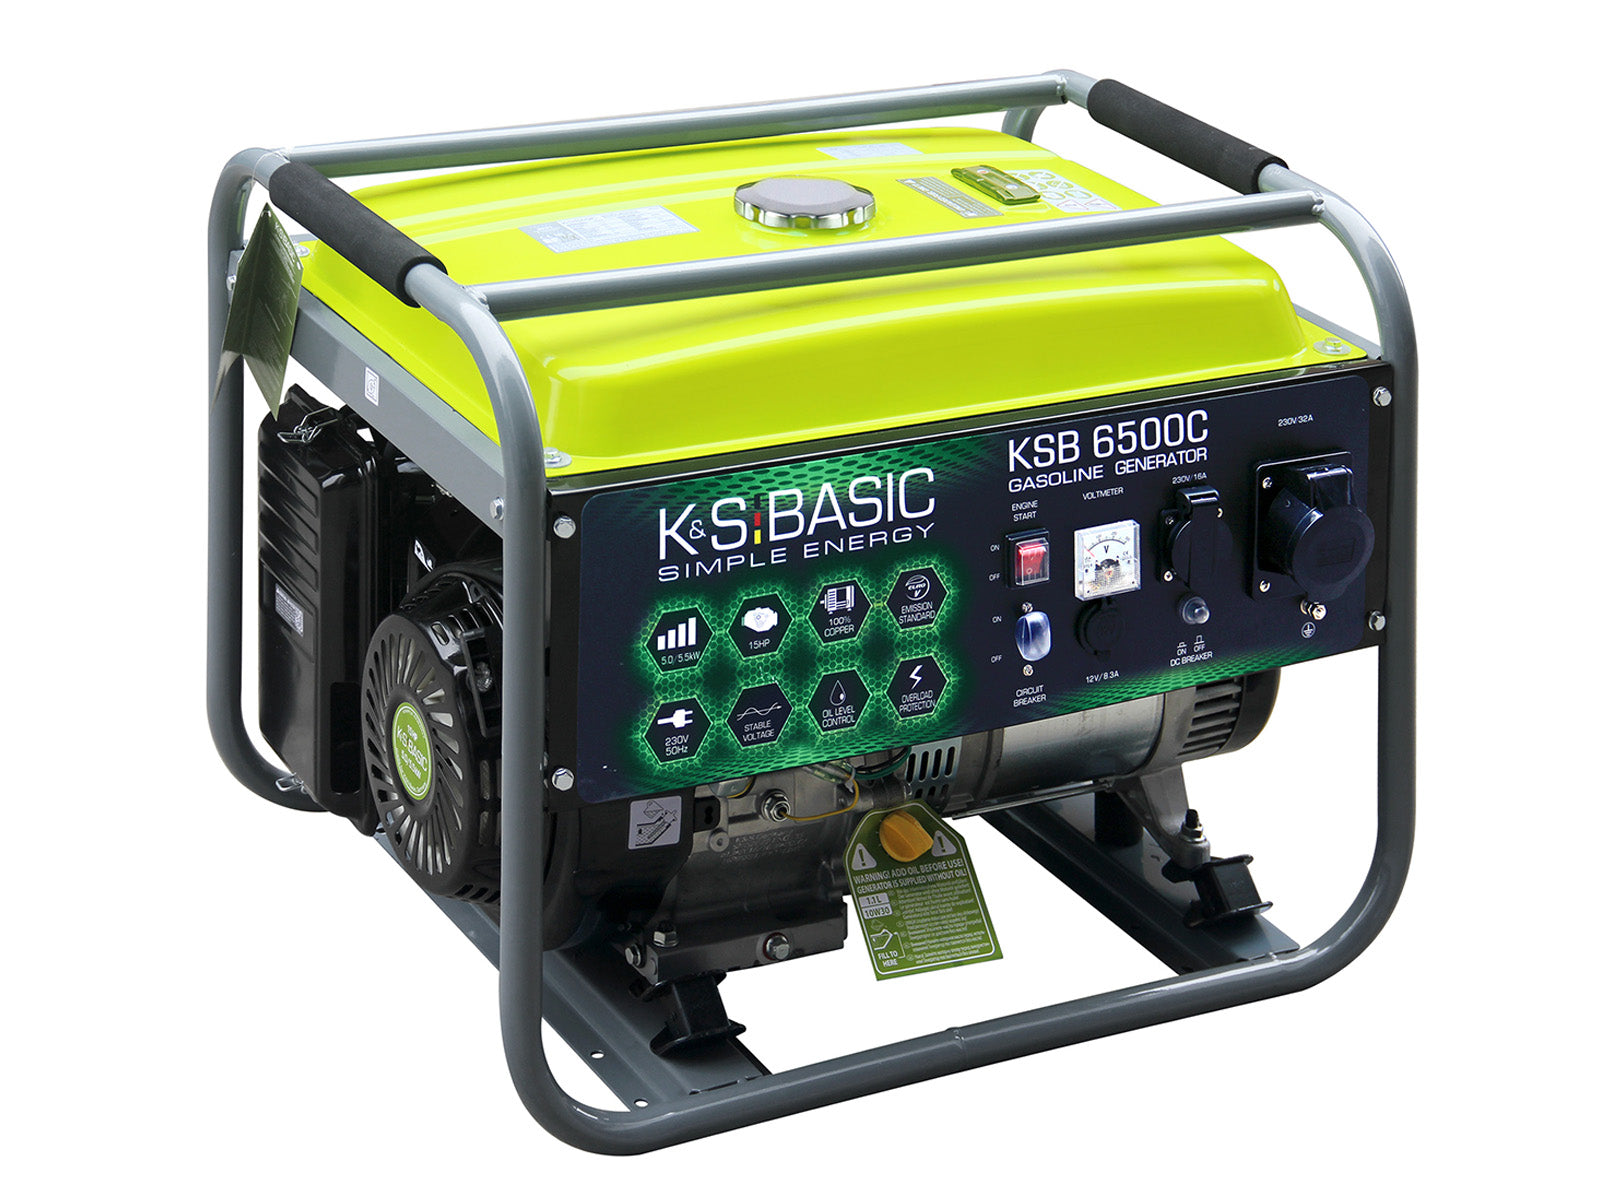 Générateur à essence KSB 6500C